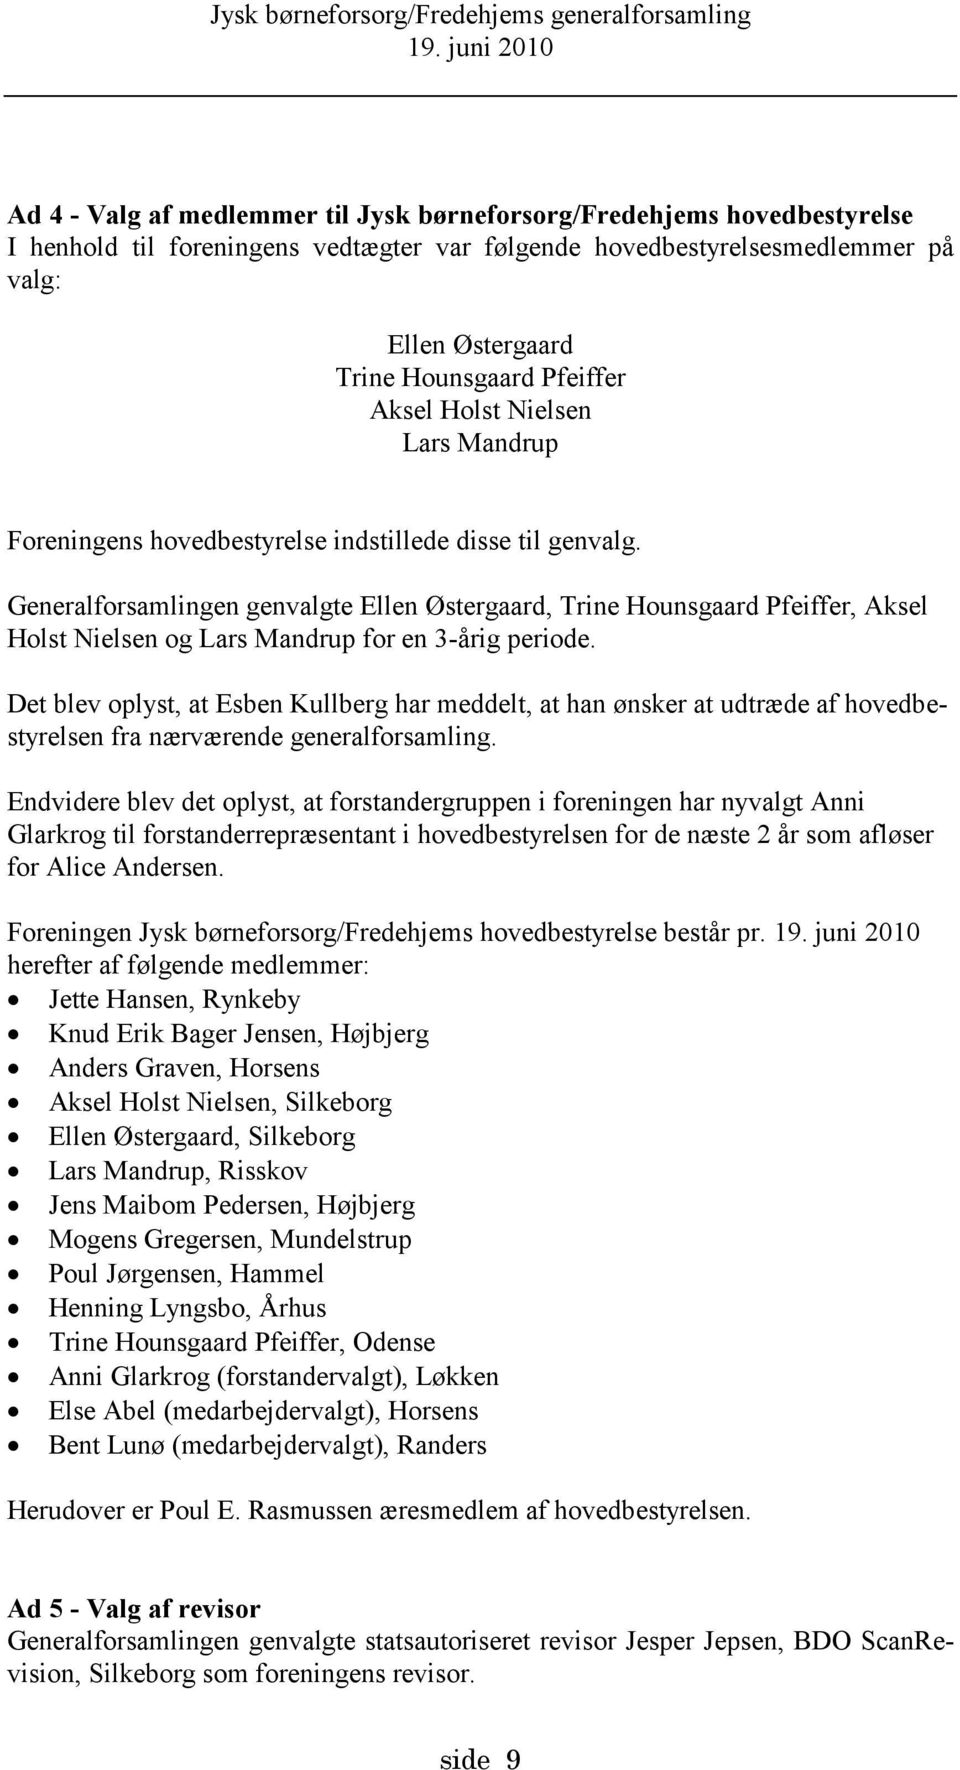 Generalforsamlingen genvalgte Ellen Østergaard, Trine Hounsgaard Pfeiffer, Aksel Holst Nielsen og Lars Mandrup for en 3-årig periode.